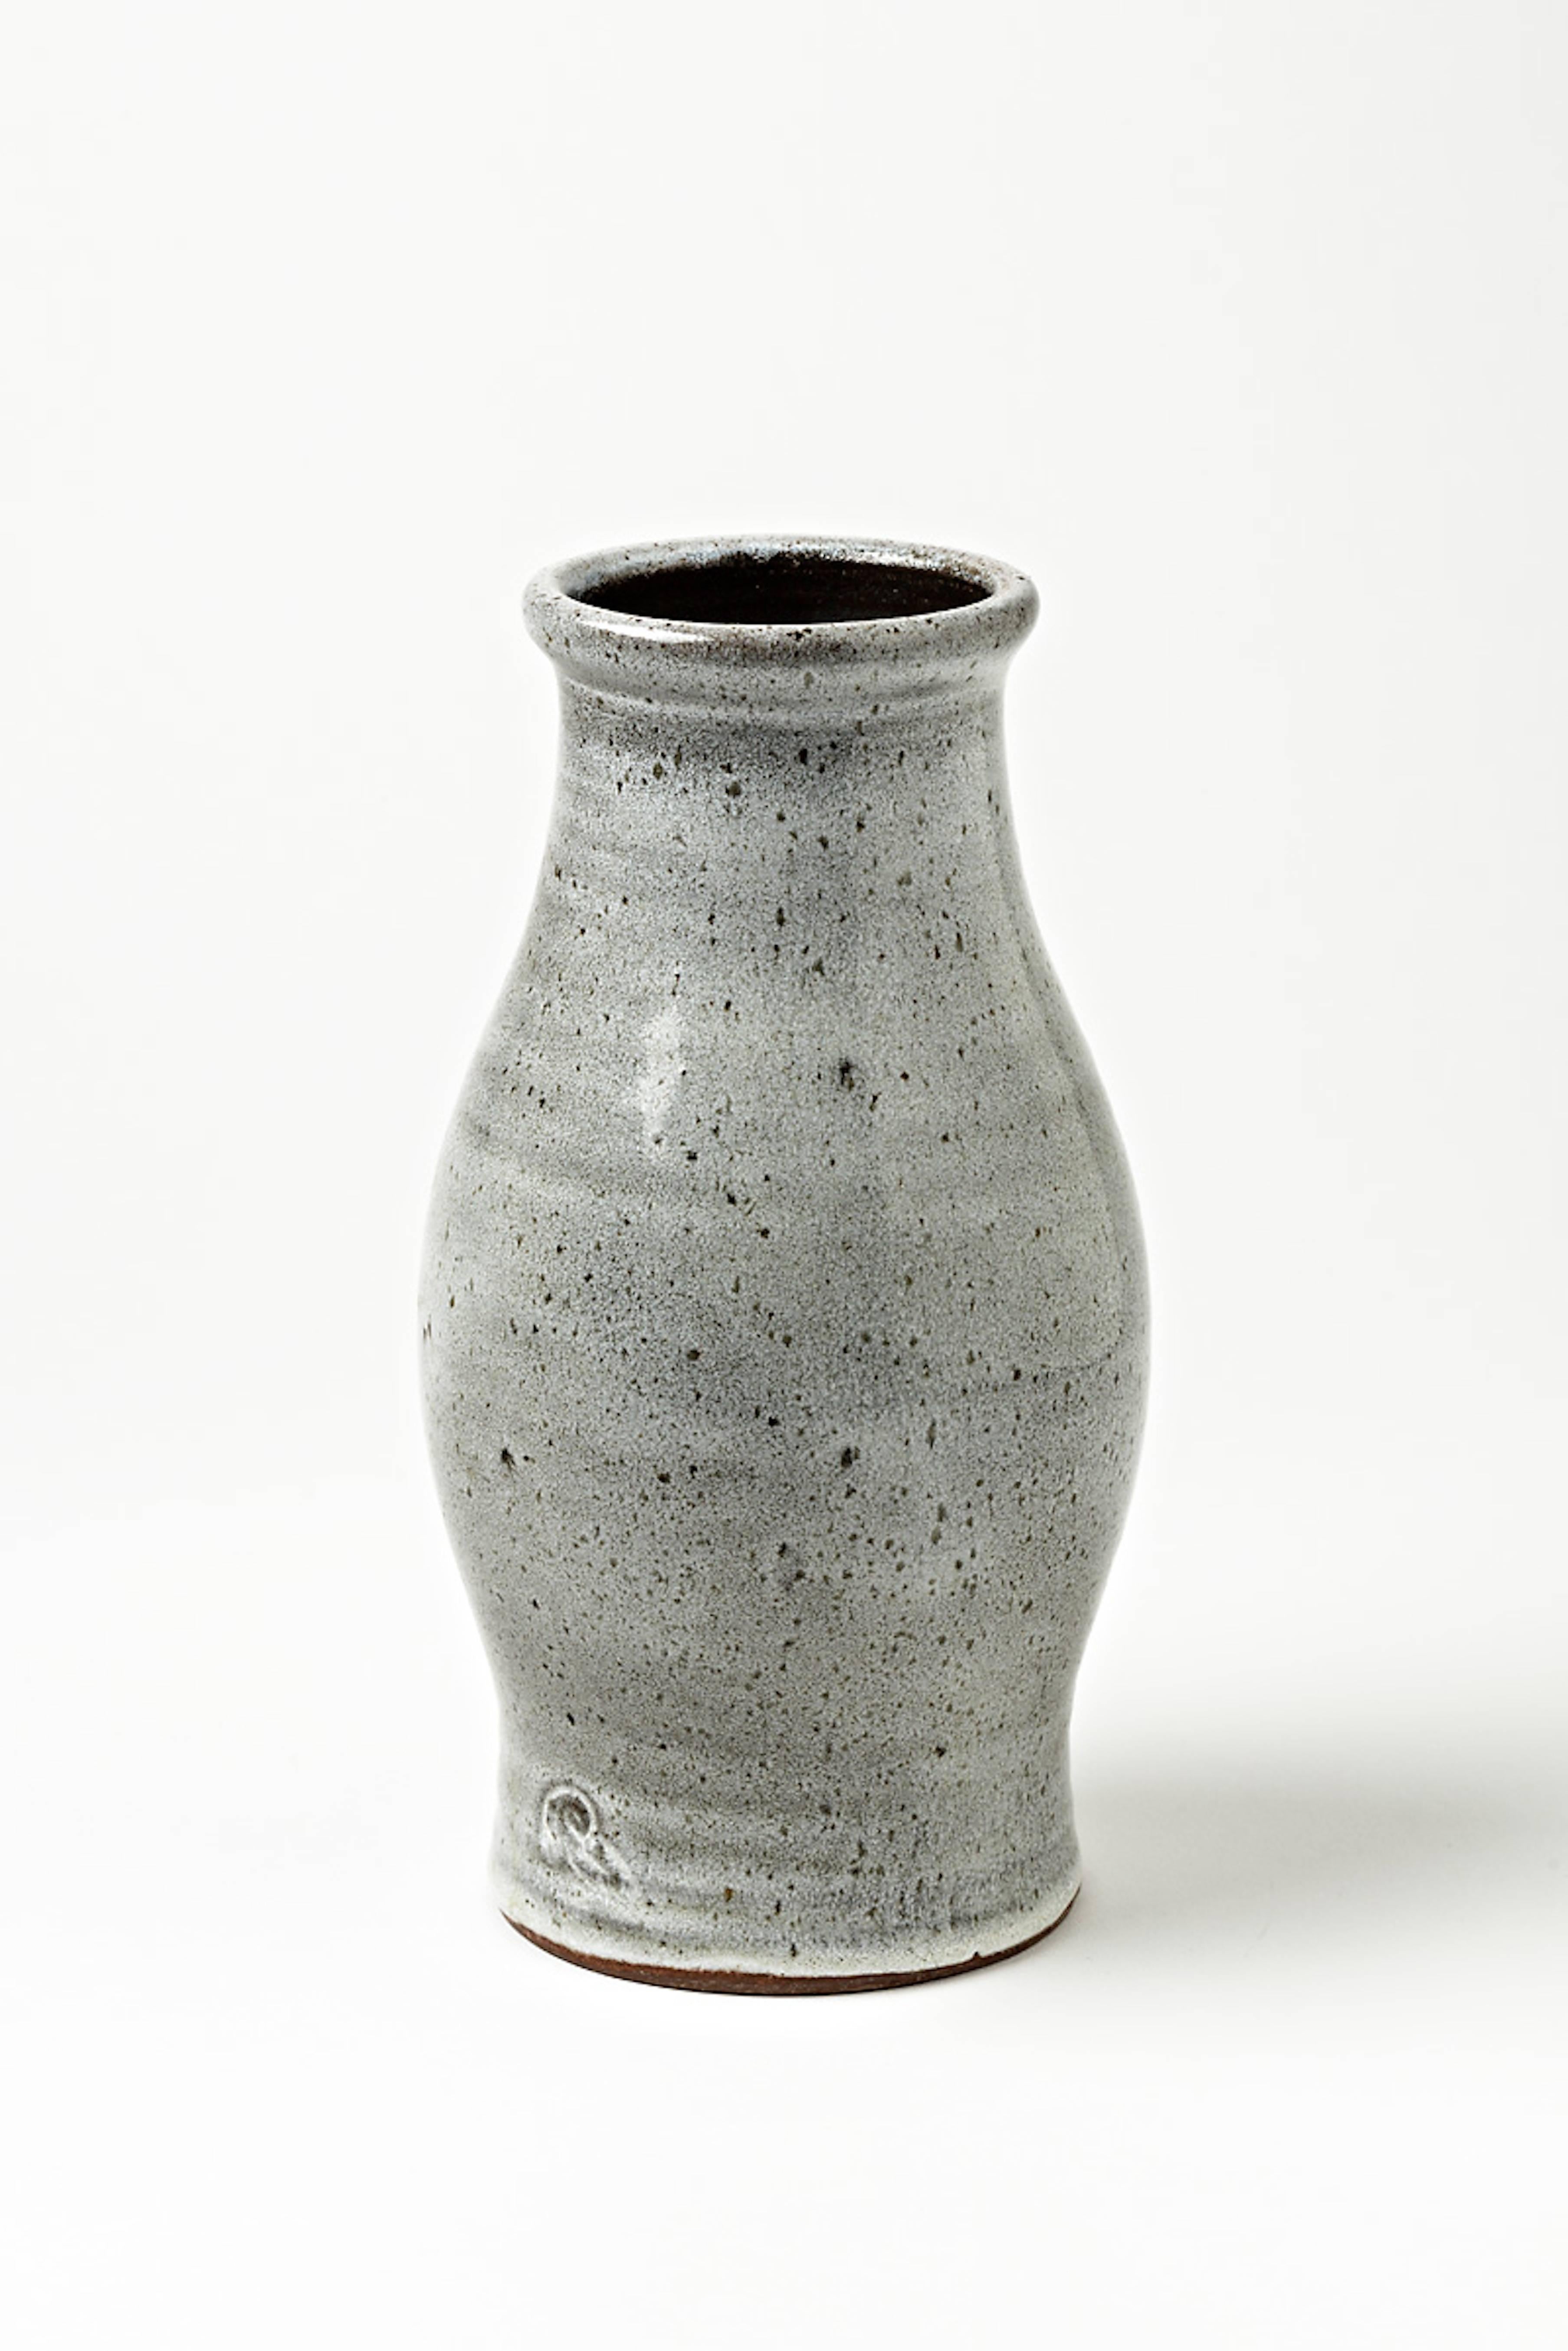 Vase aus Steingut mit weißem Glasurdekor aus der Werkstatt Pierlot, Ratilly, Frankreich.
Unterschrift an der Basis.
Perfekter Originalzustand,
ca. 1980-1990.